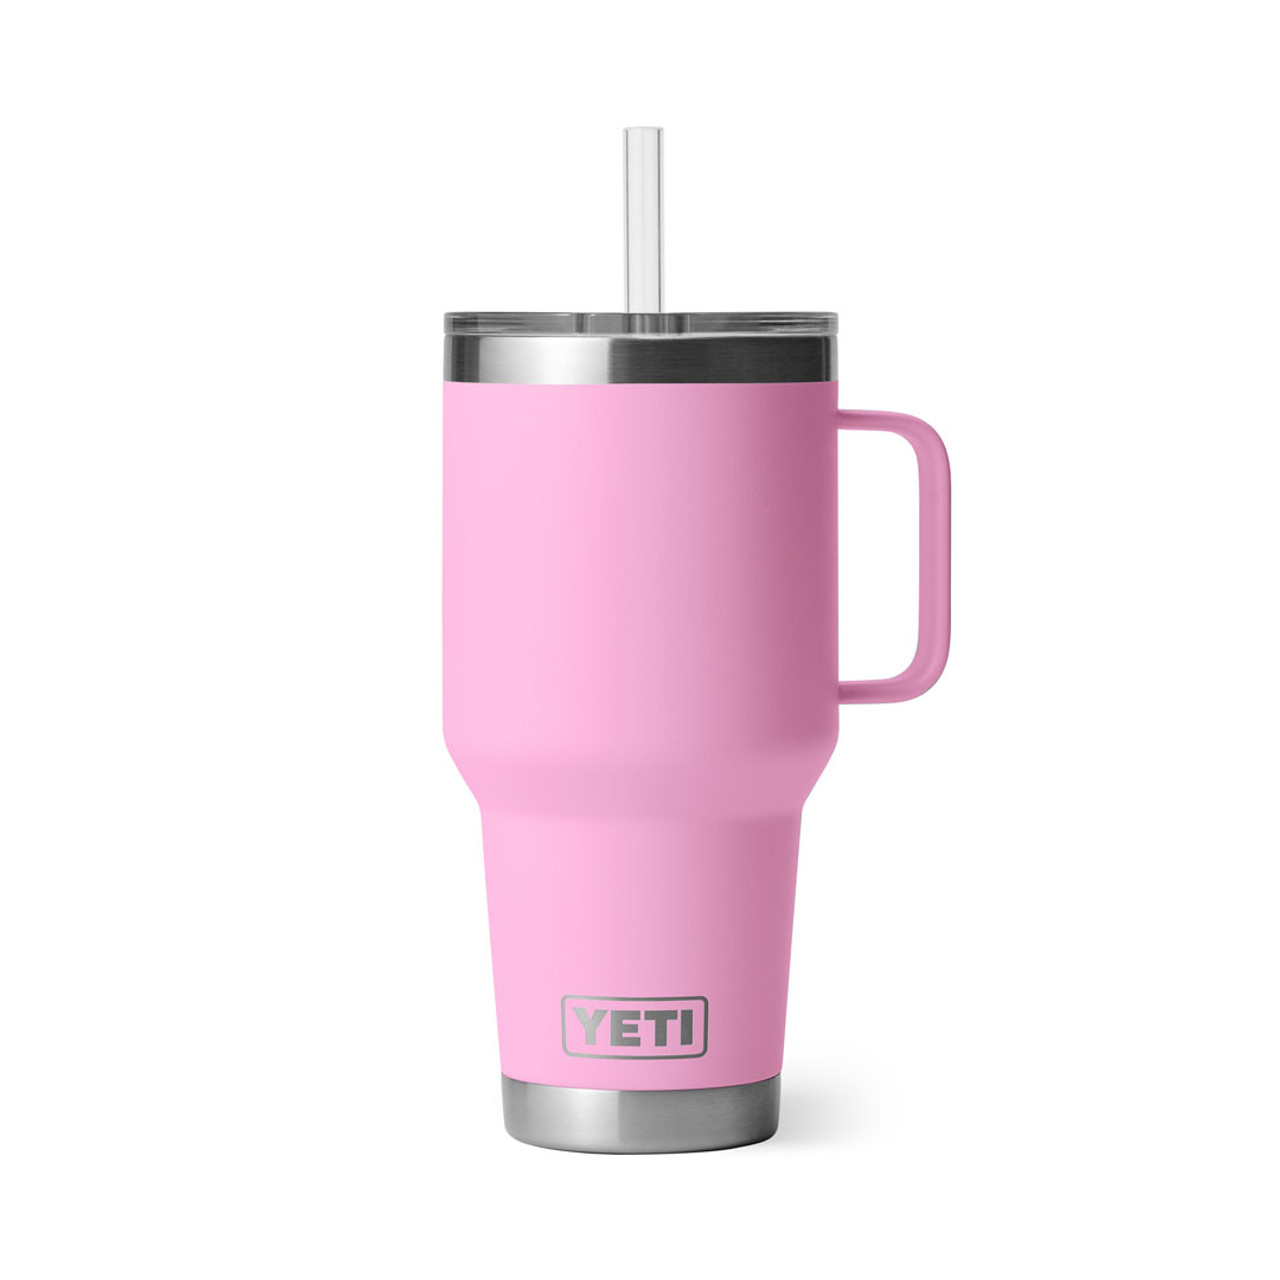 Yeti Power Pink 35oz Rambler Mug Cup w/ Straw Lid New w/ Sticker